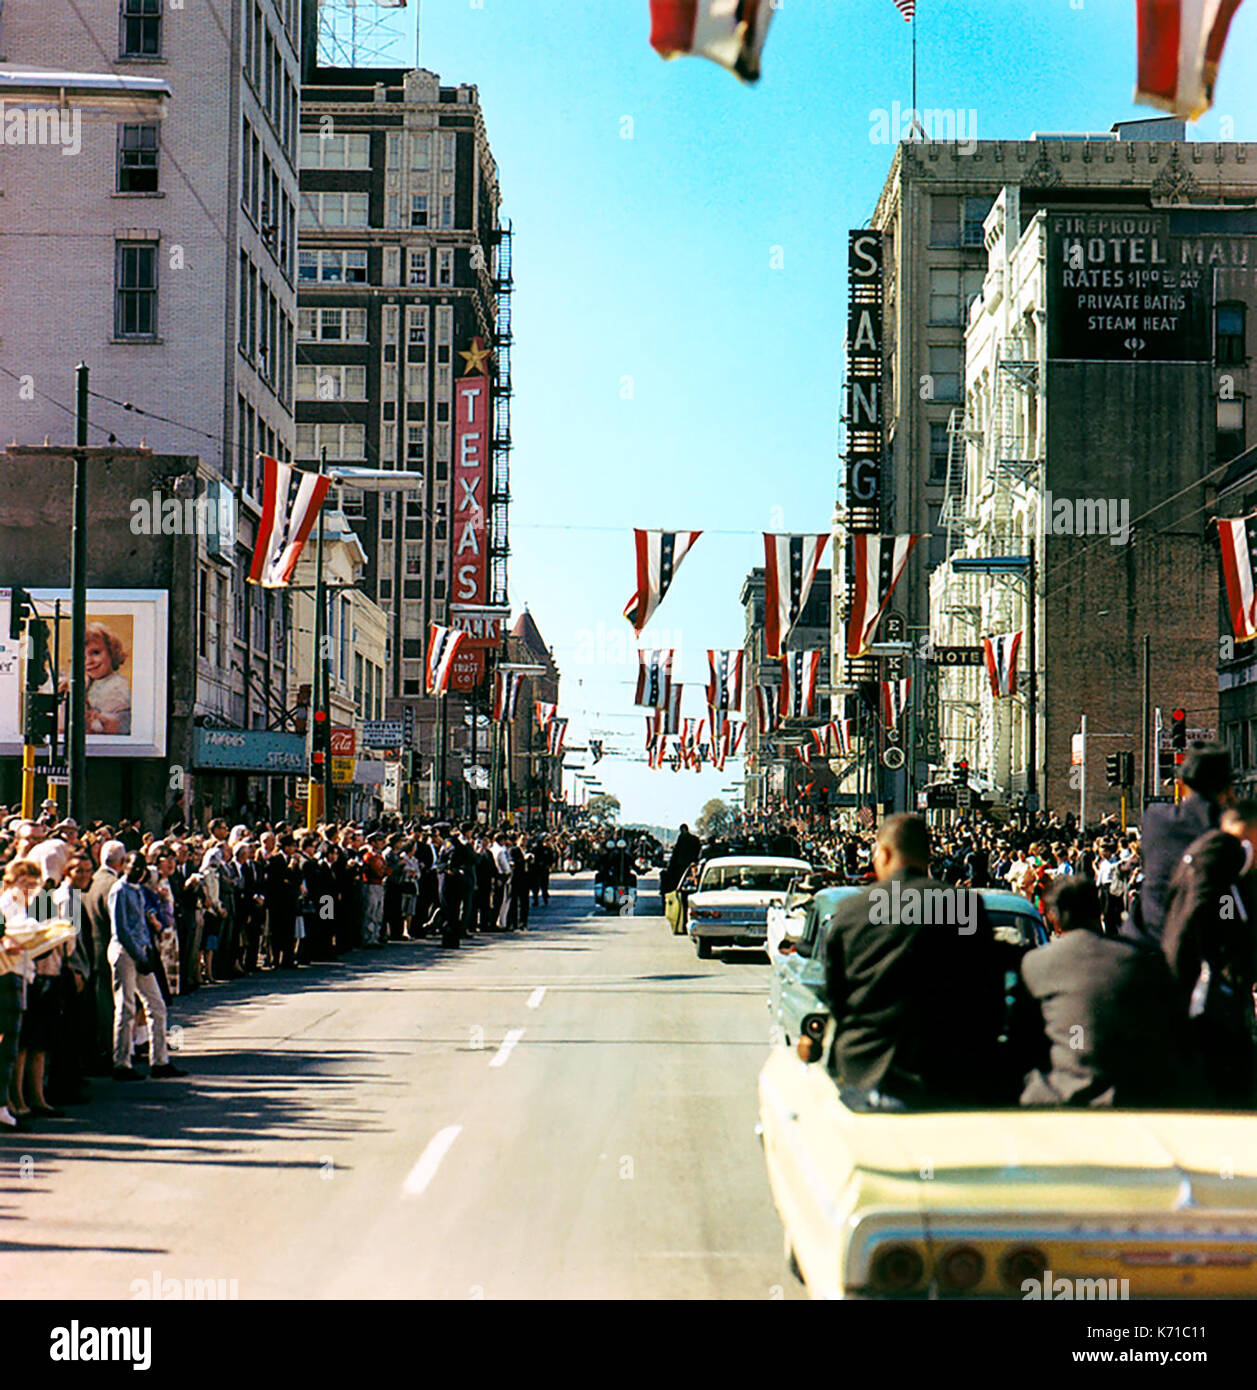 El Presidente John F. Kennedy la caravana en Main Street en Griffin Street en Dallas, Texas, el 22 de noviembre de 1963, poco antes de que el Presidente Kennedy fue asesinado. Foto por Cecil Stoughton. Foto de stock